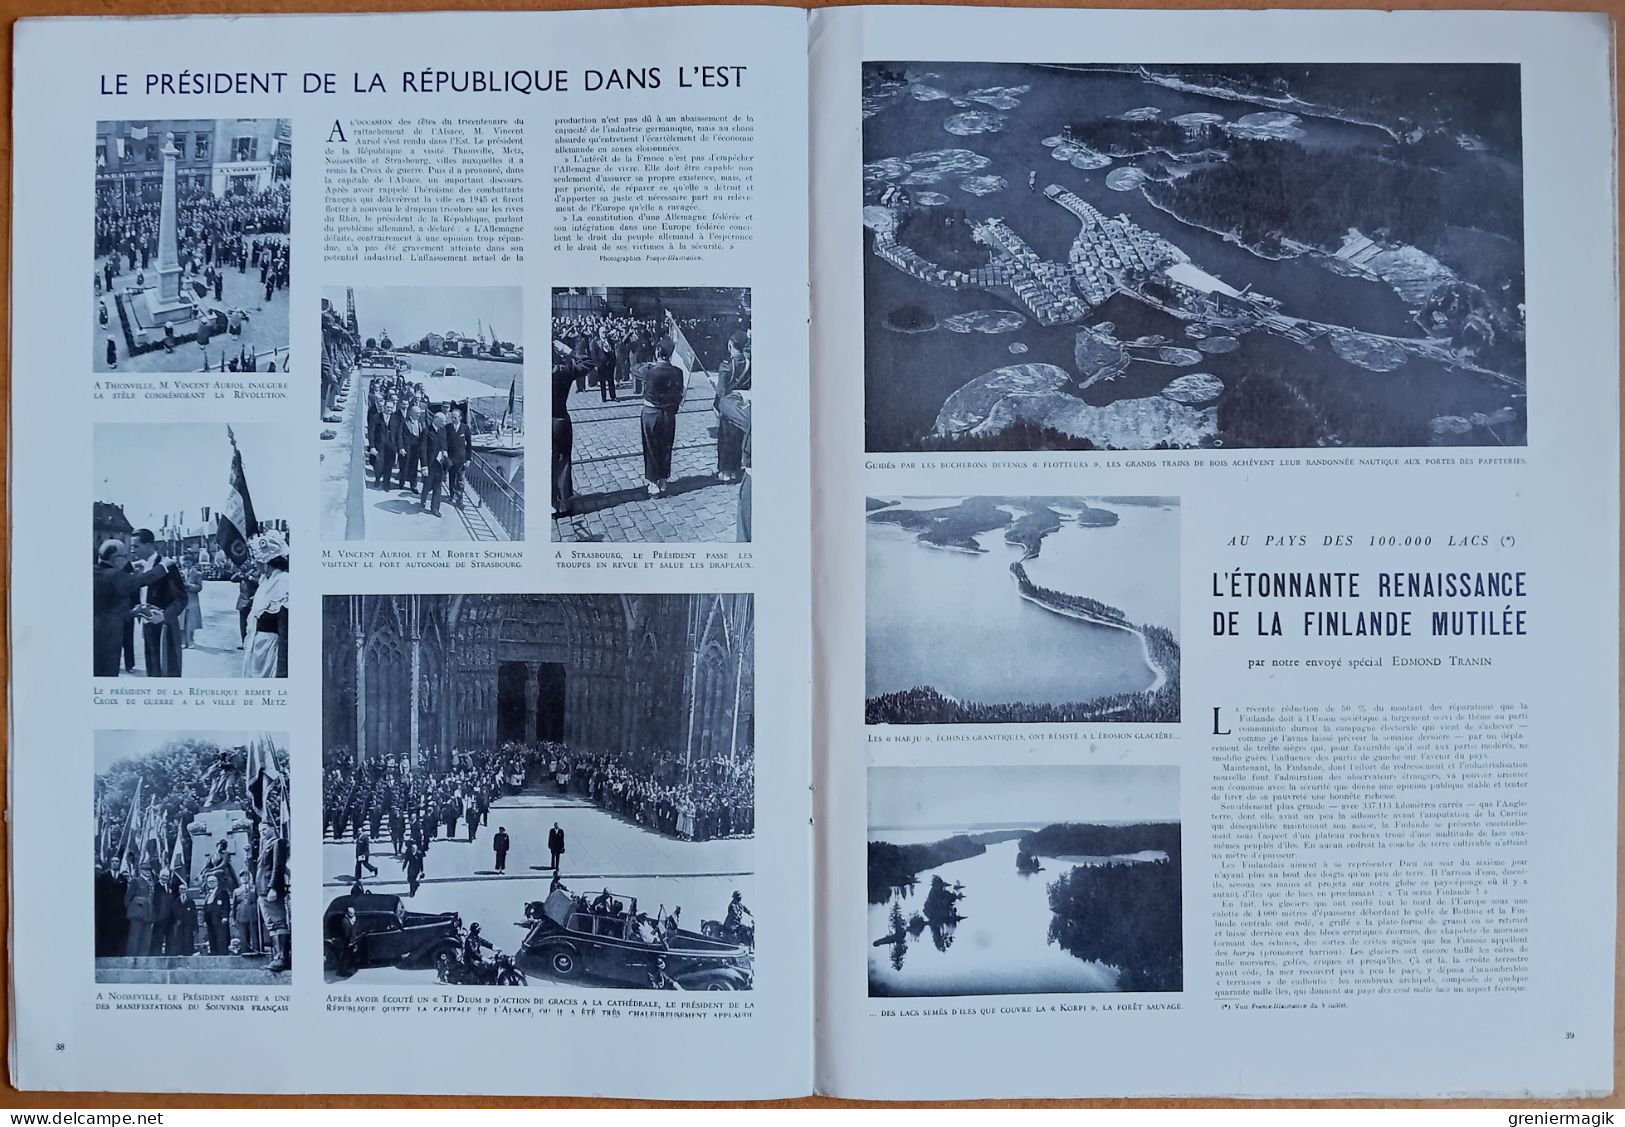 France Illustration N°145 10/07/1948 Le Fezzan/La Chine en armes/Sidérurgie/Funambule Garmisch/Finlande/L'art iranien